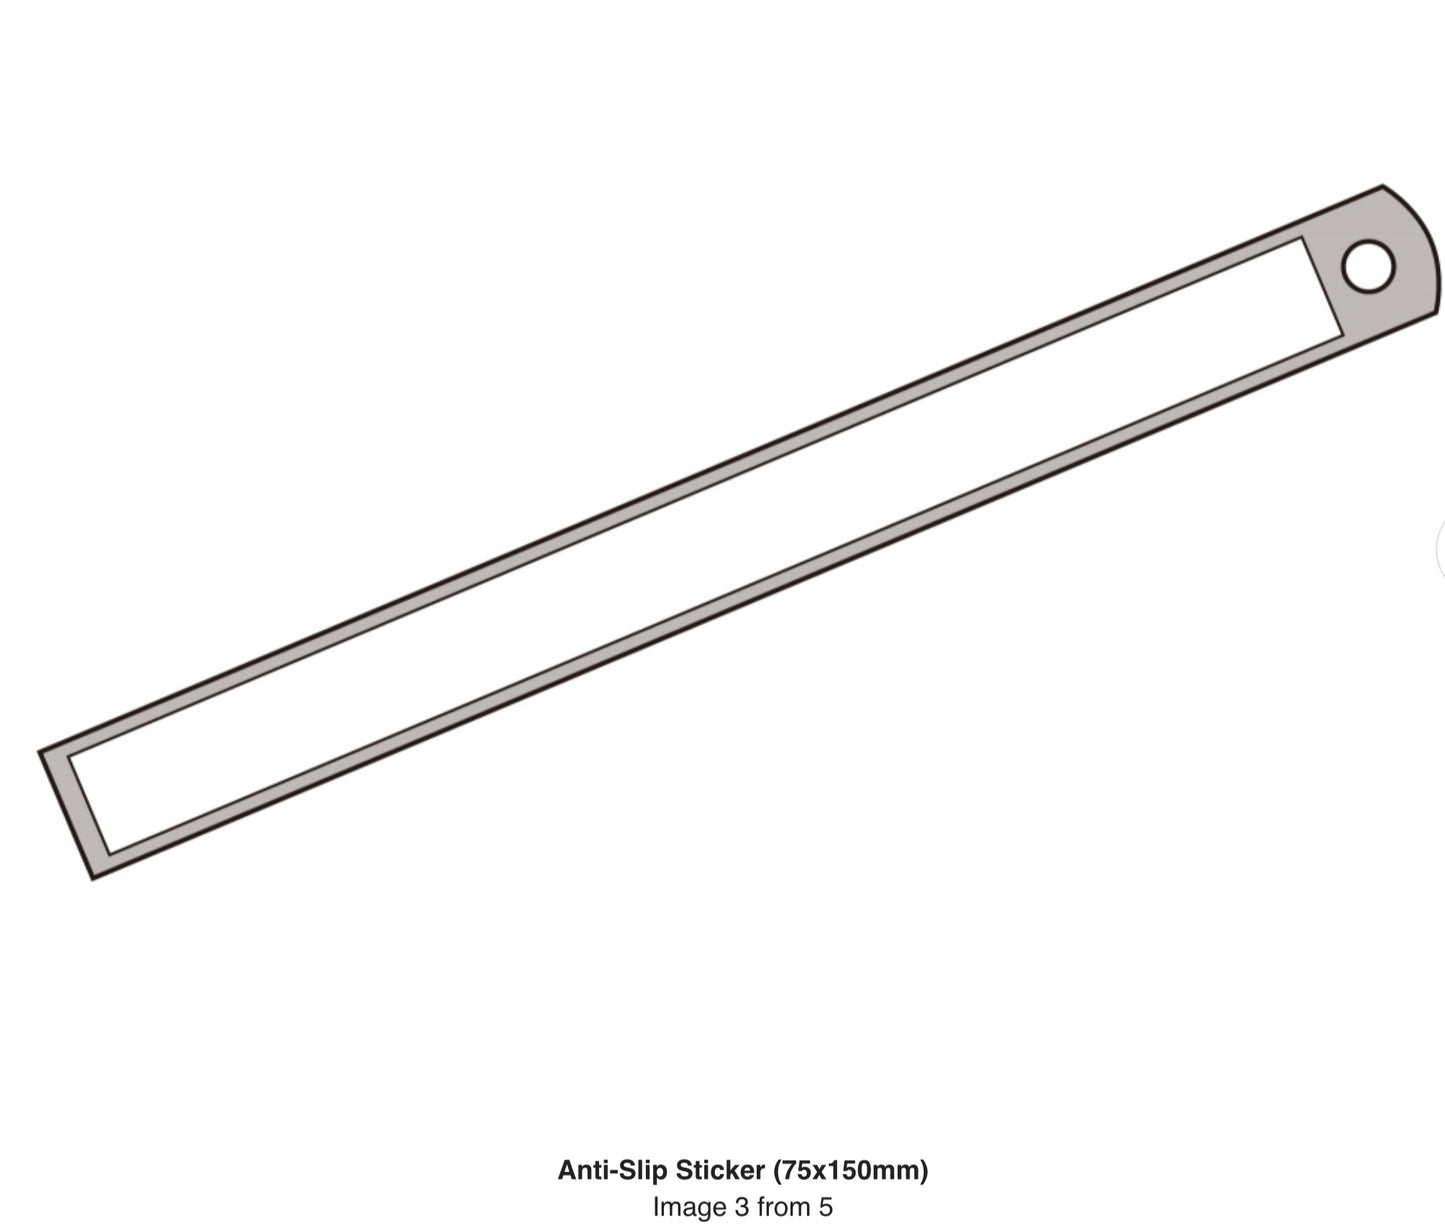 ANTI-SLIP STICKER (75X150MM)